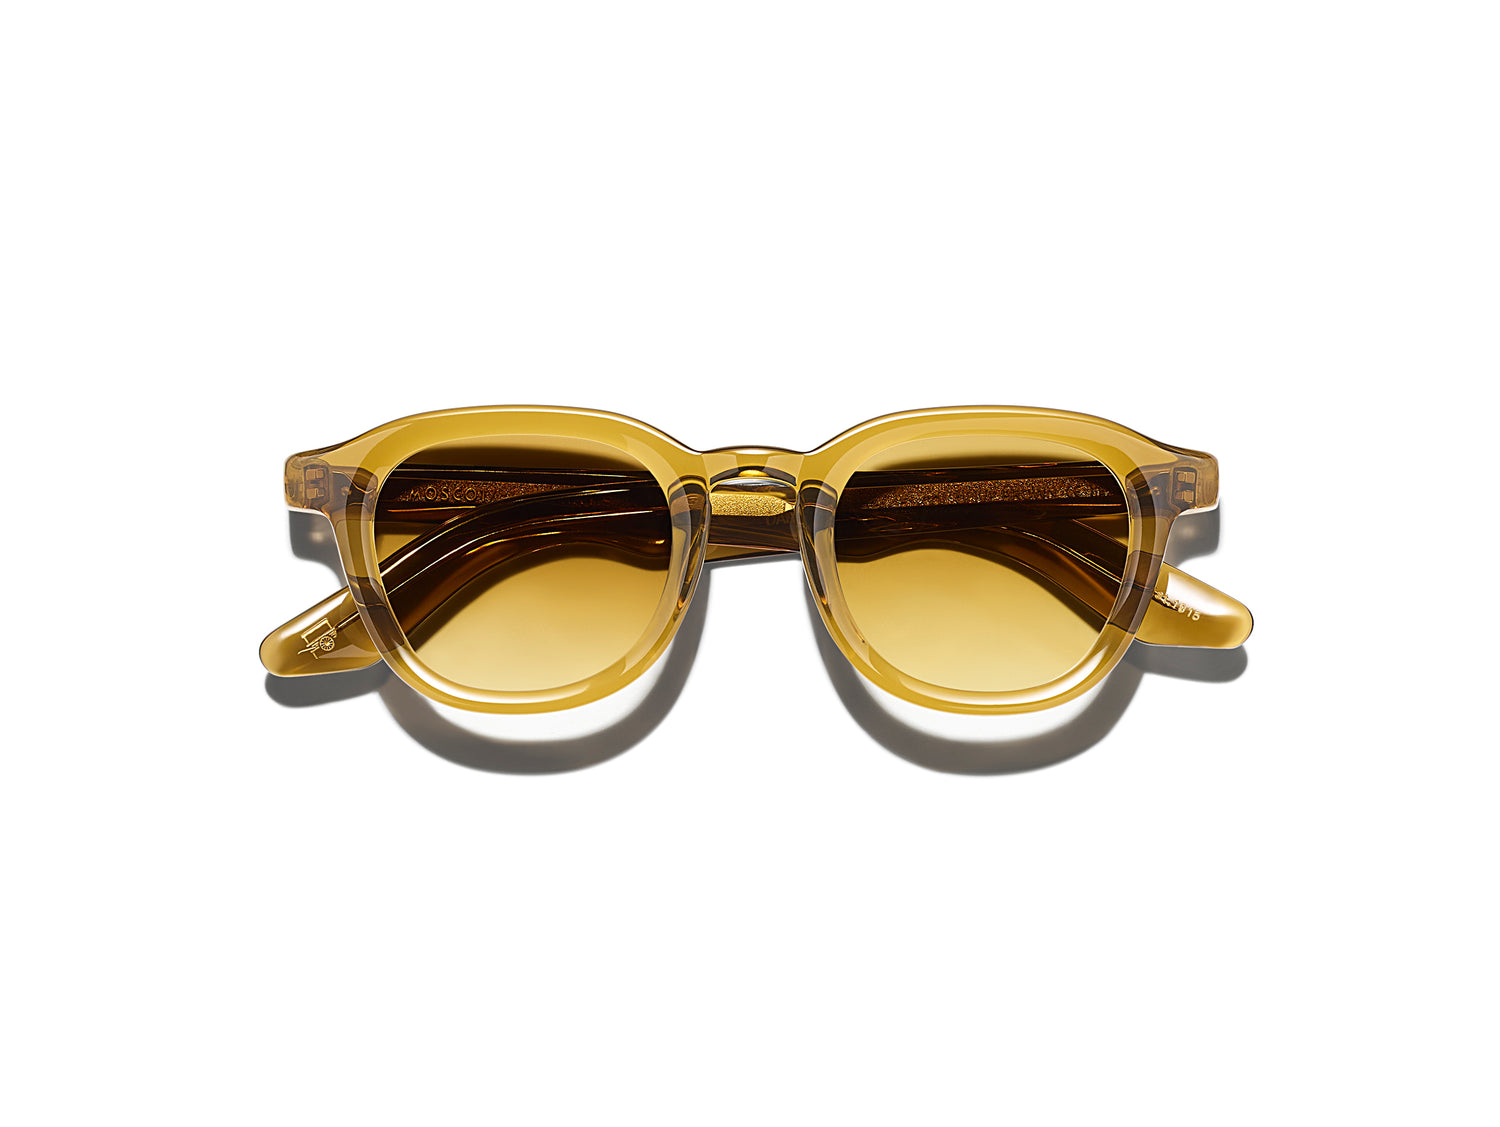 moscot sunglasses - yosemiteeyewear